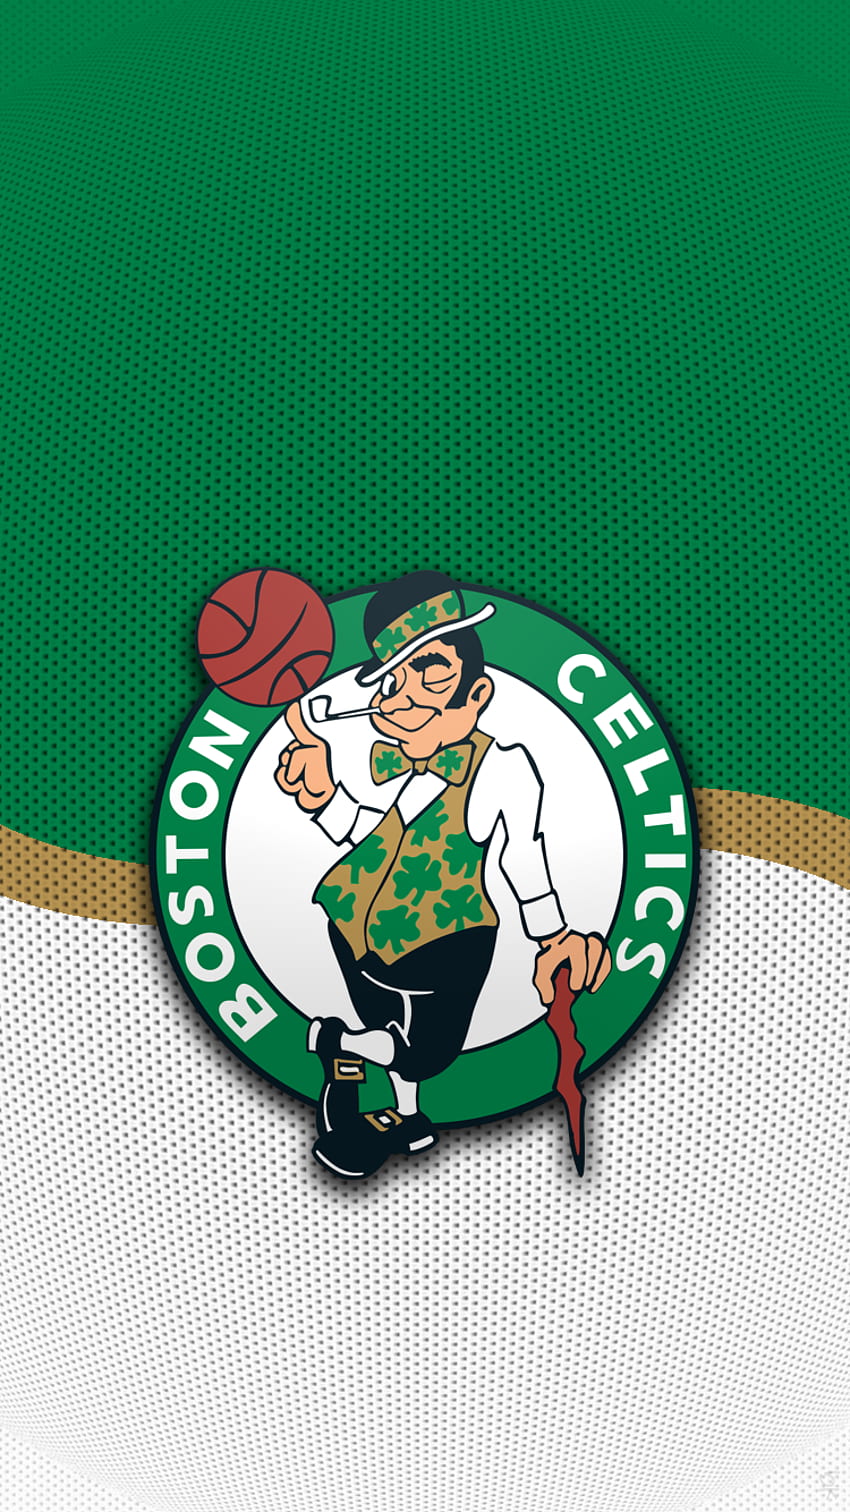 ボストン・セルティックス 02 Png.603444 750×1,334 ピクセル。 ボストン・セルティックスのロゴ、ボストン・セルティックスのバスケットボール、セルティックス HD電話の壁紙